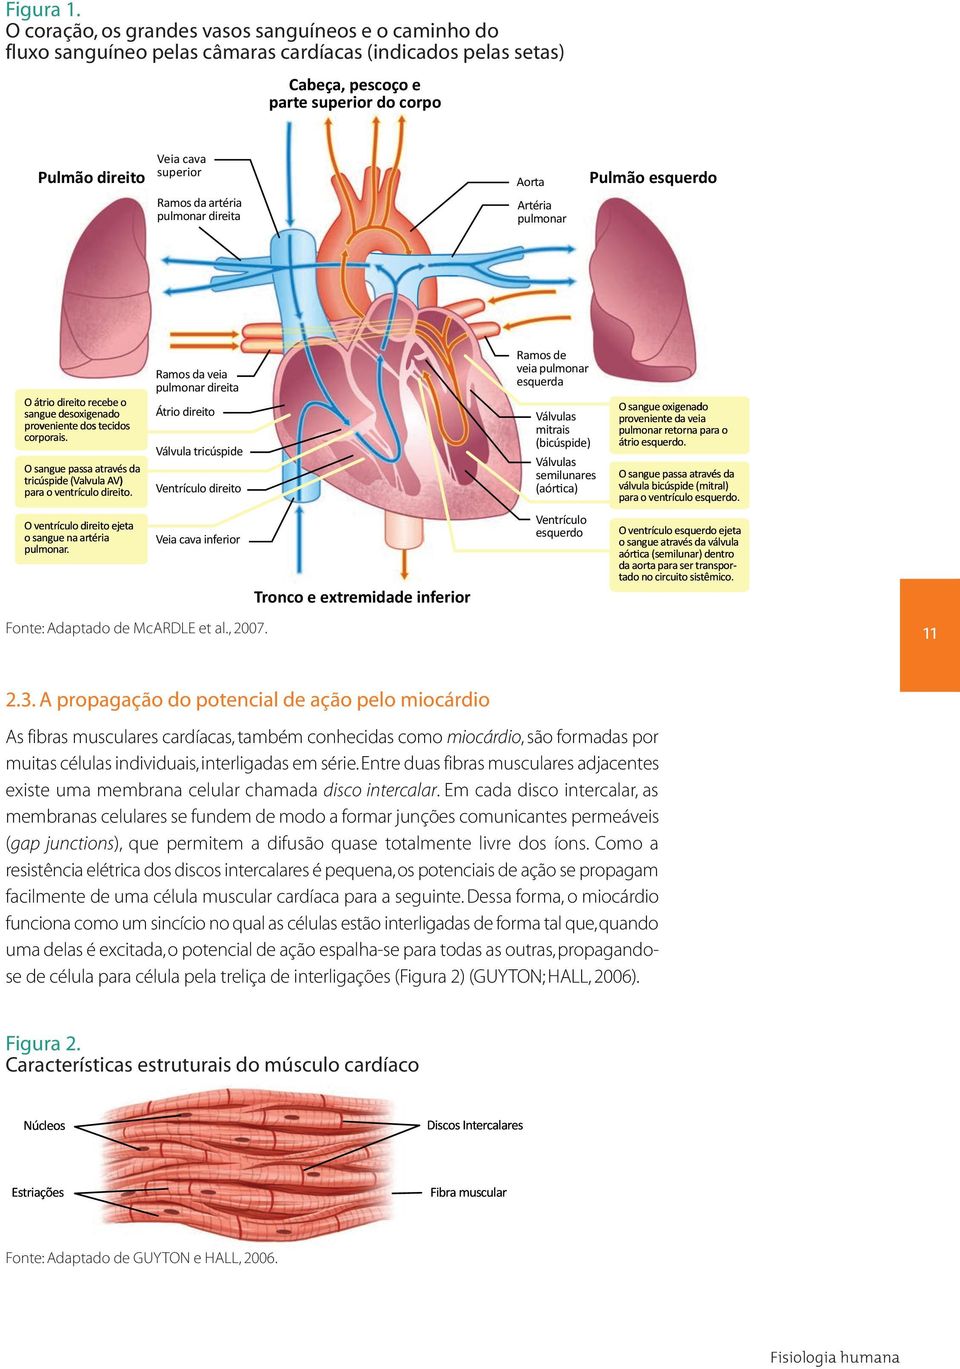 da artéria pulmonar direita Aorta Artéria pulmonar Pulmão esquerdo O átrio direitorecebe sangue desoxigenado o proveniente dos tecidos corporais. O sangue passa através da para o ventrículo direito.